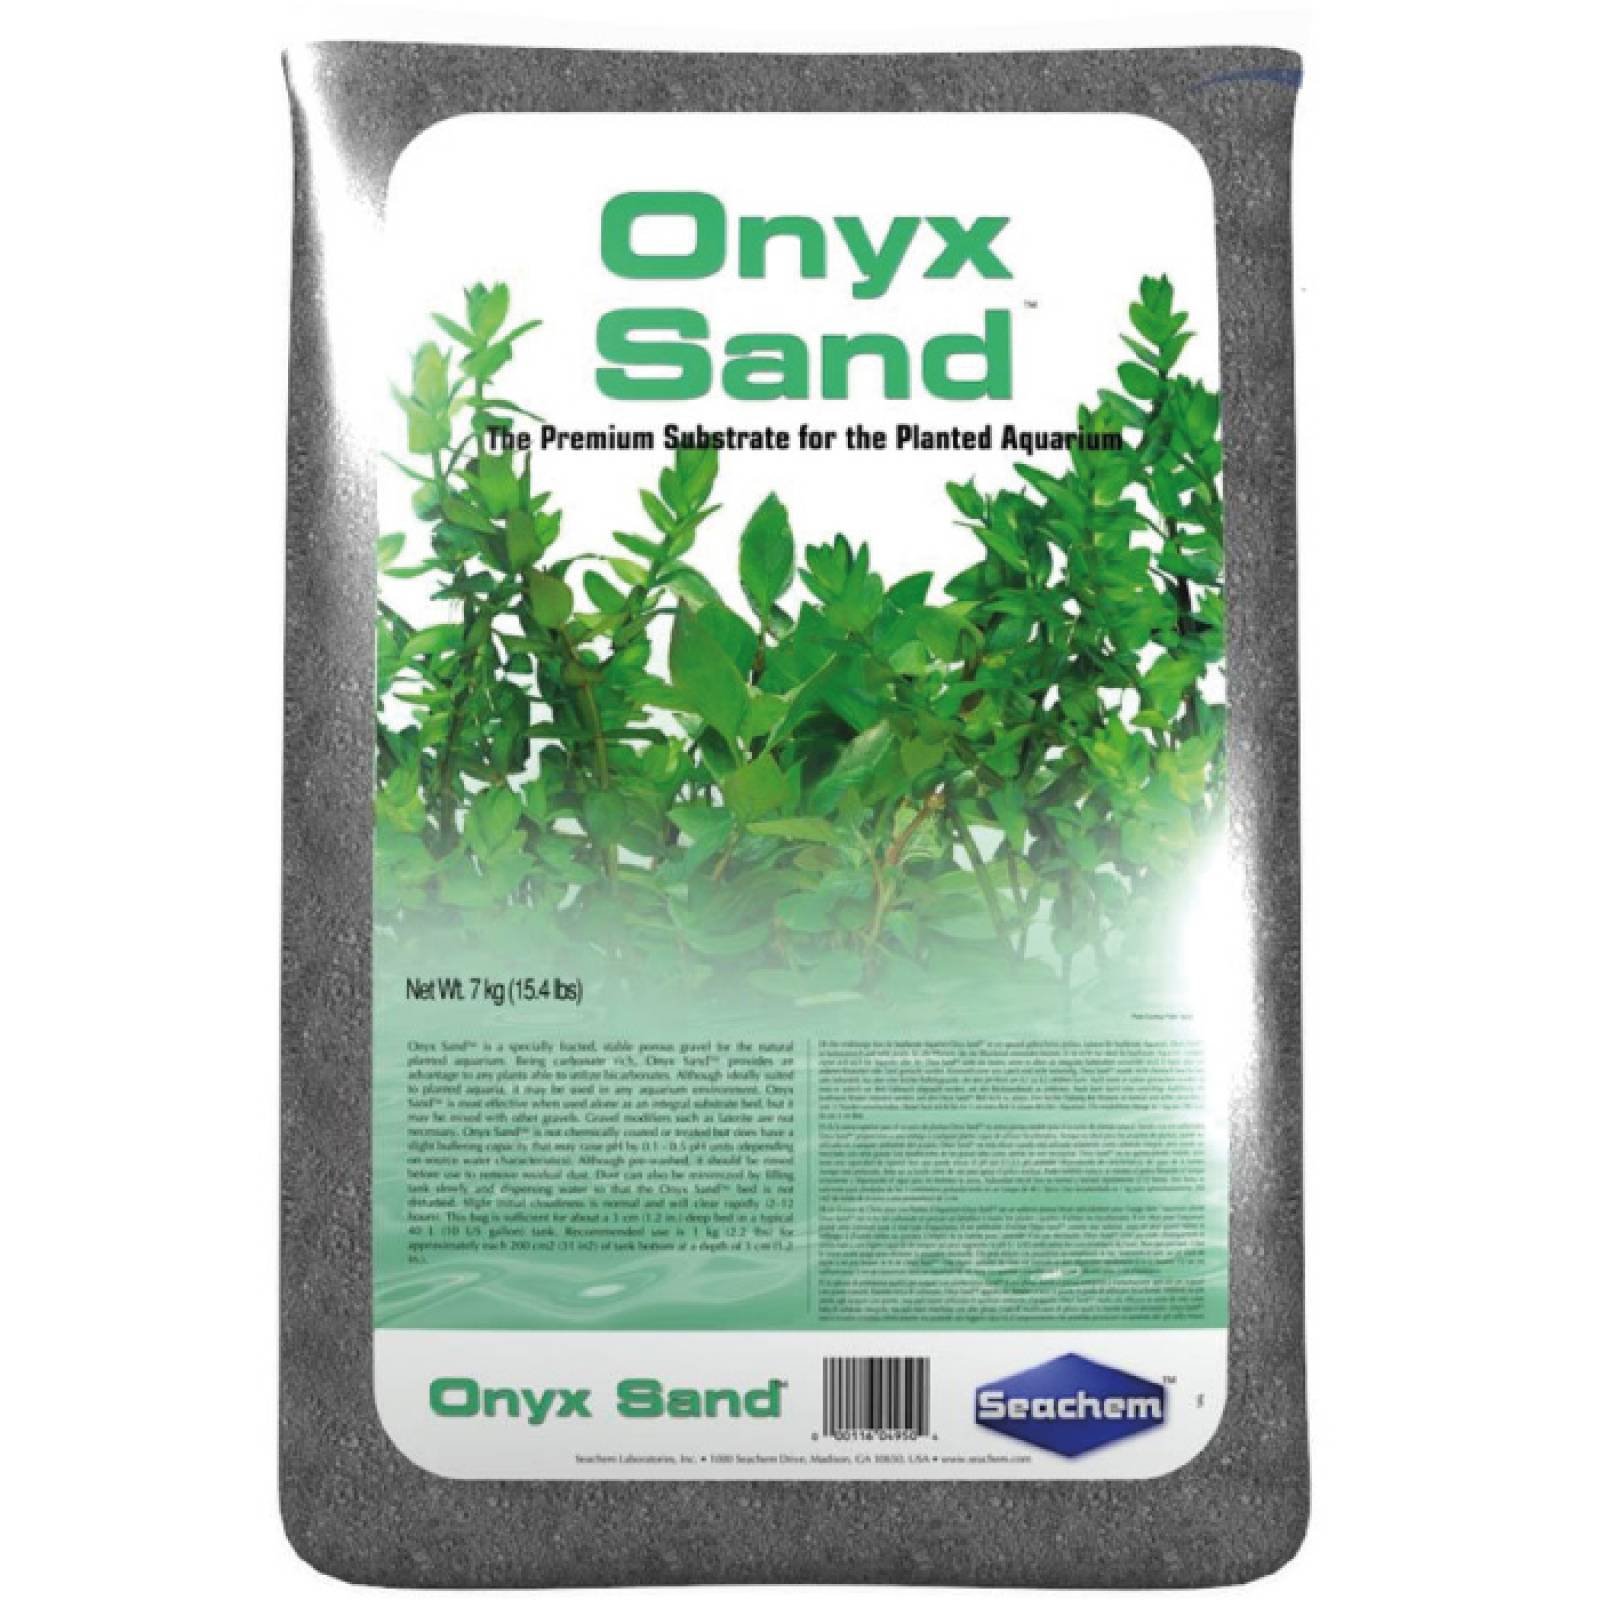 Seachem Onyx Sand 7 Kg 15.4 Libras Arena Natural para Acuario Plantado